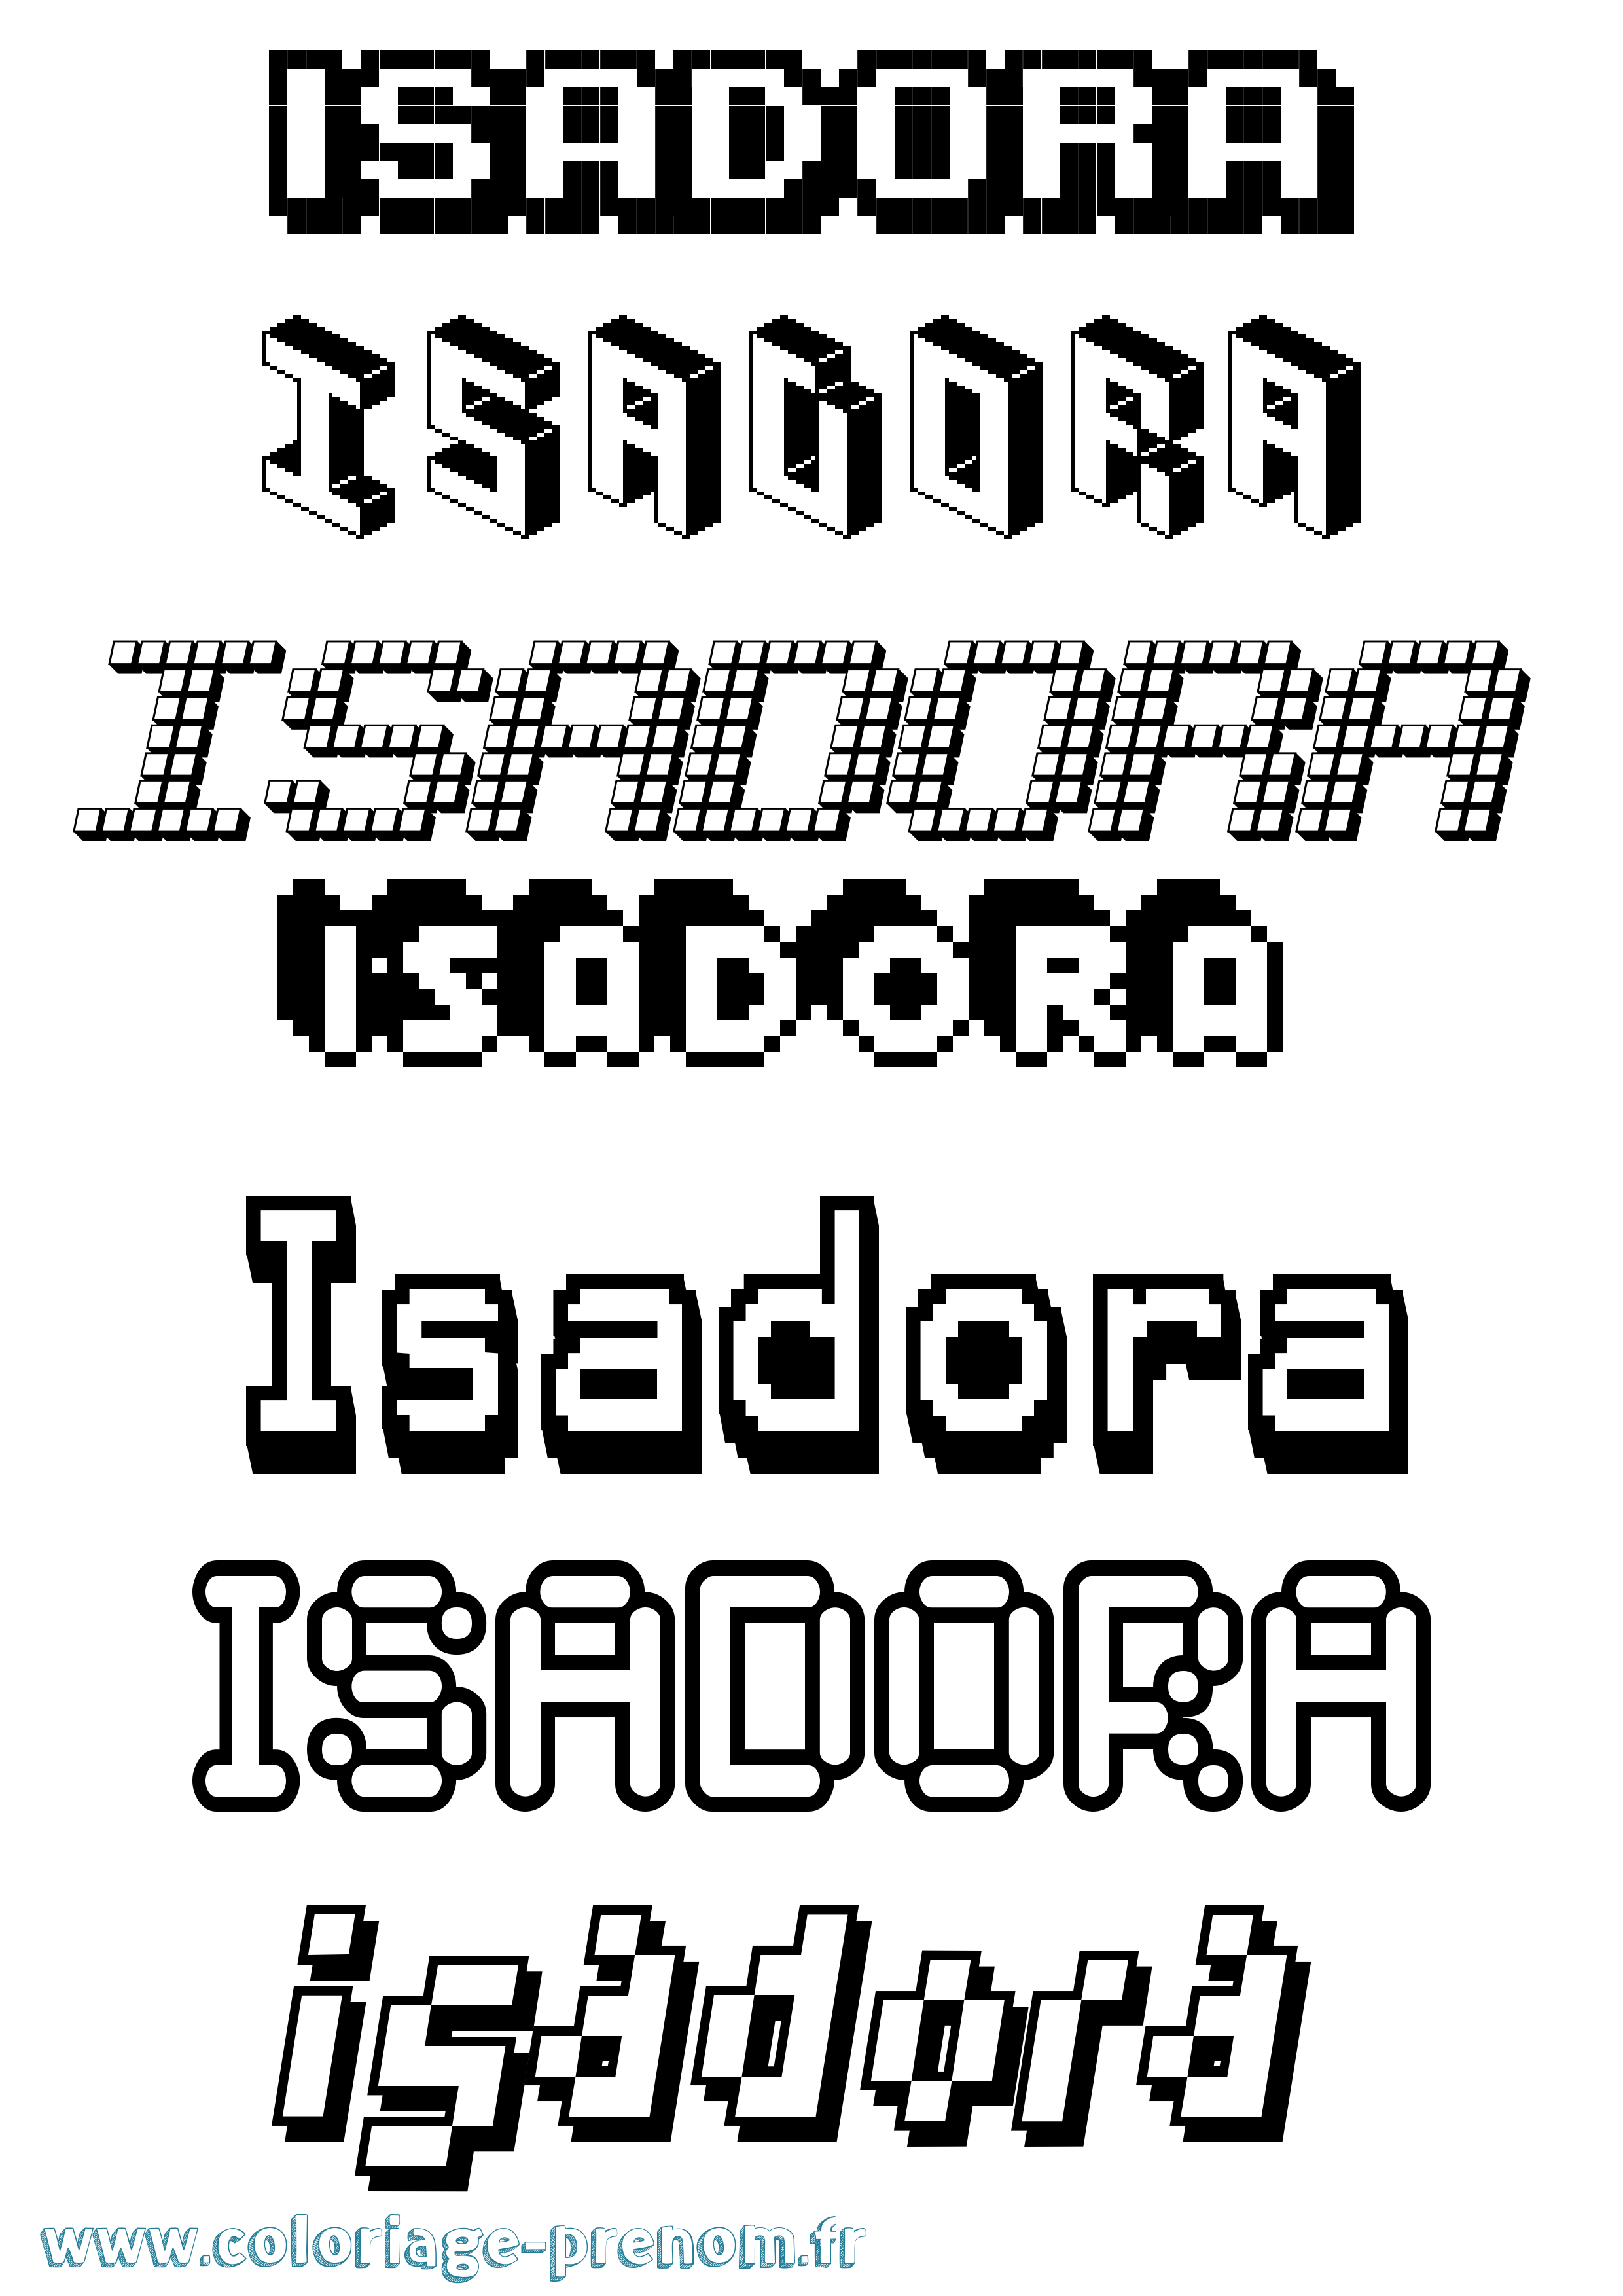 Coloriage prénom Isadora Pixel